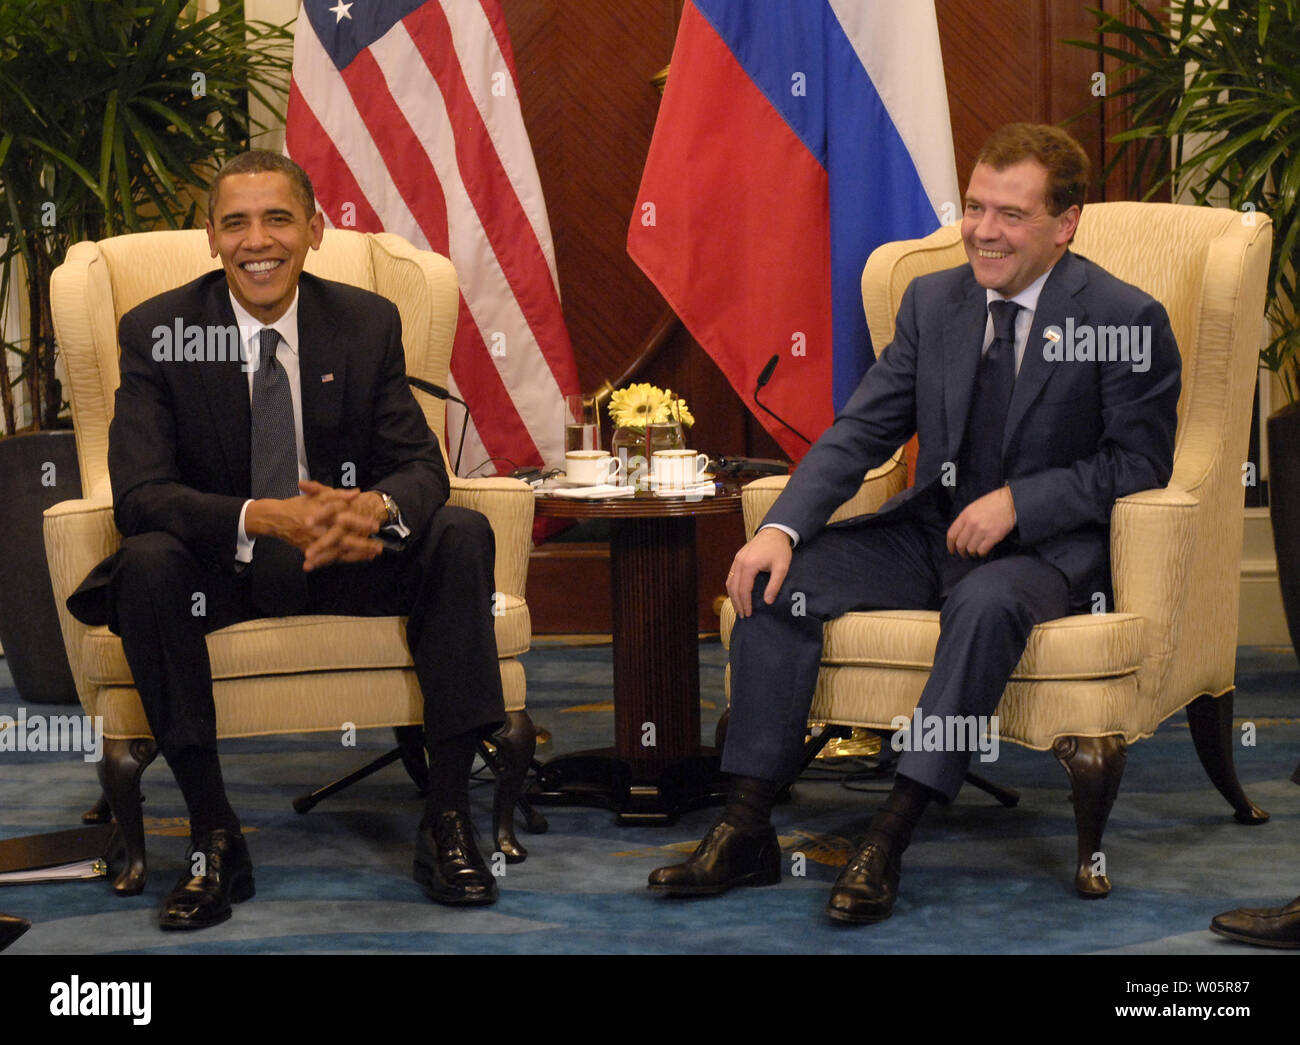 Us-Präsident Barack Obama (L) trifft sich mit seinem Russischen Amtskollegen Dmitri Medwedew während der Asia-Pacific Economic Cooperation (APEC) Leaders Summit in Singapur am 15. November 2009. UPI/Alex Volgin Stockfoto